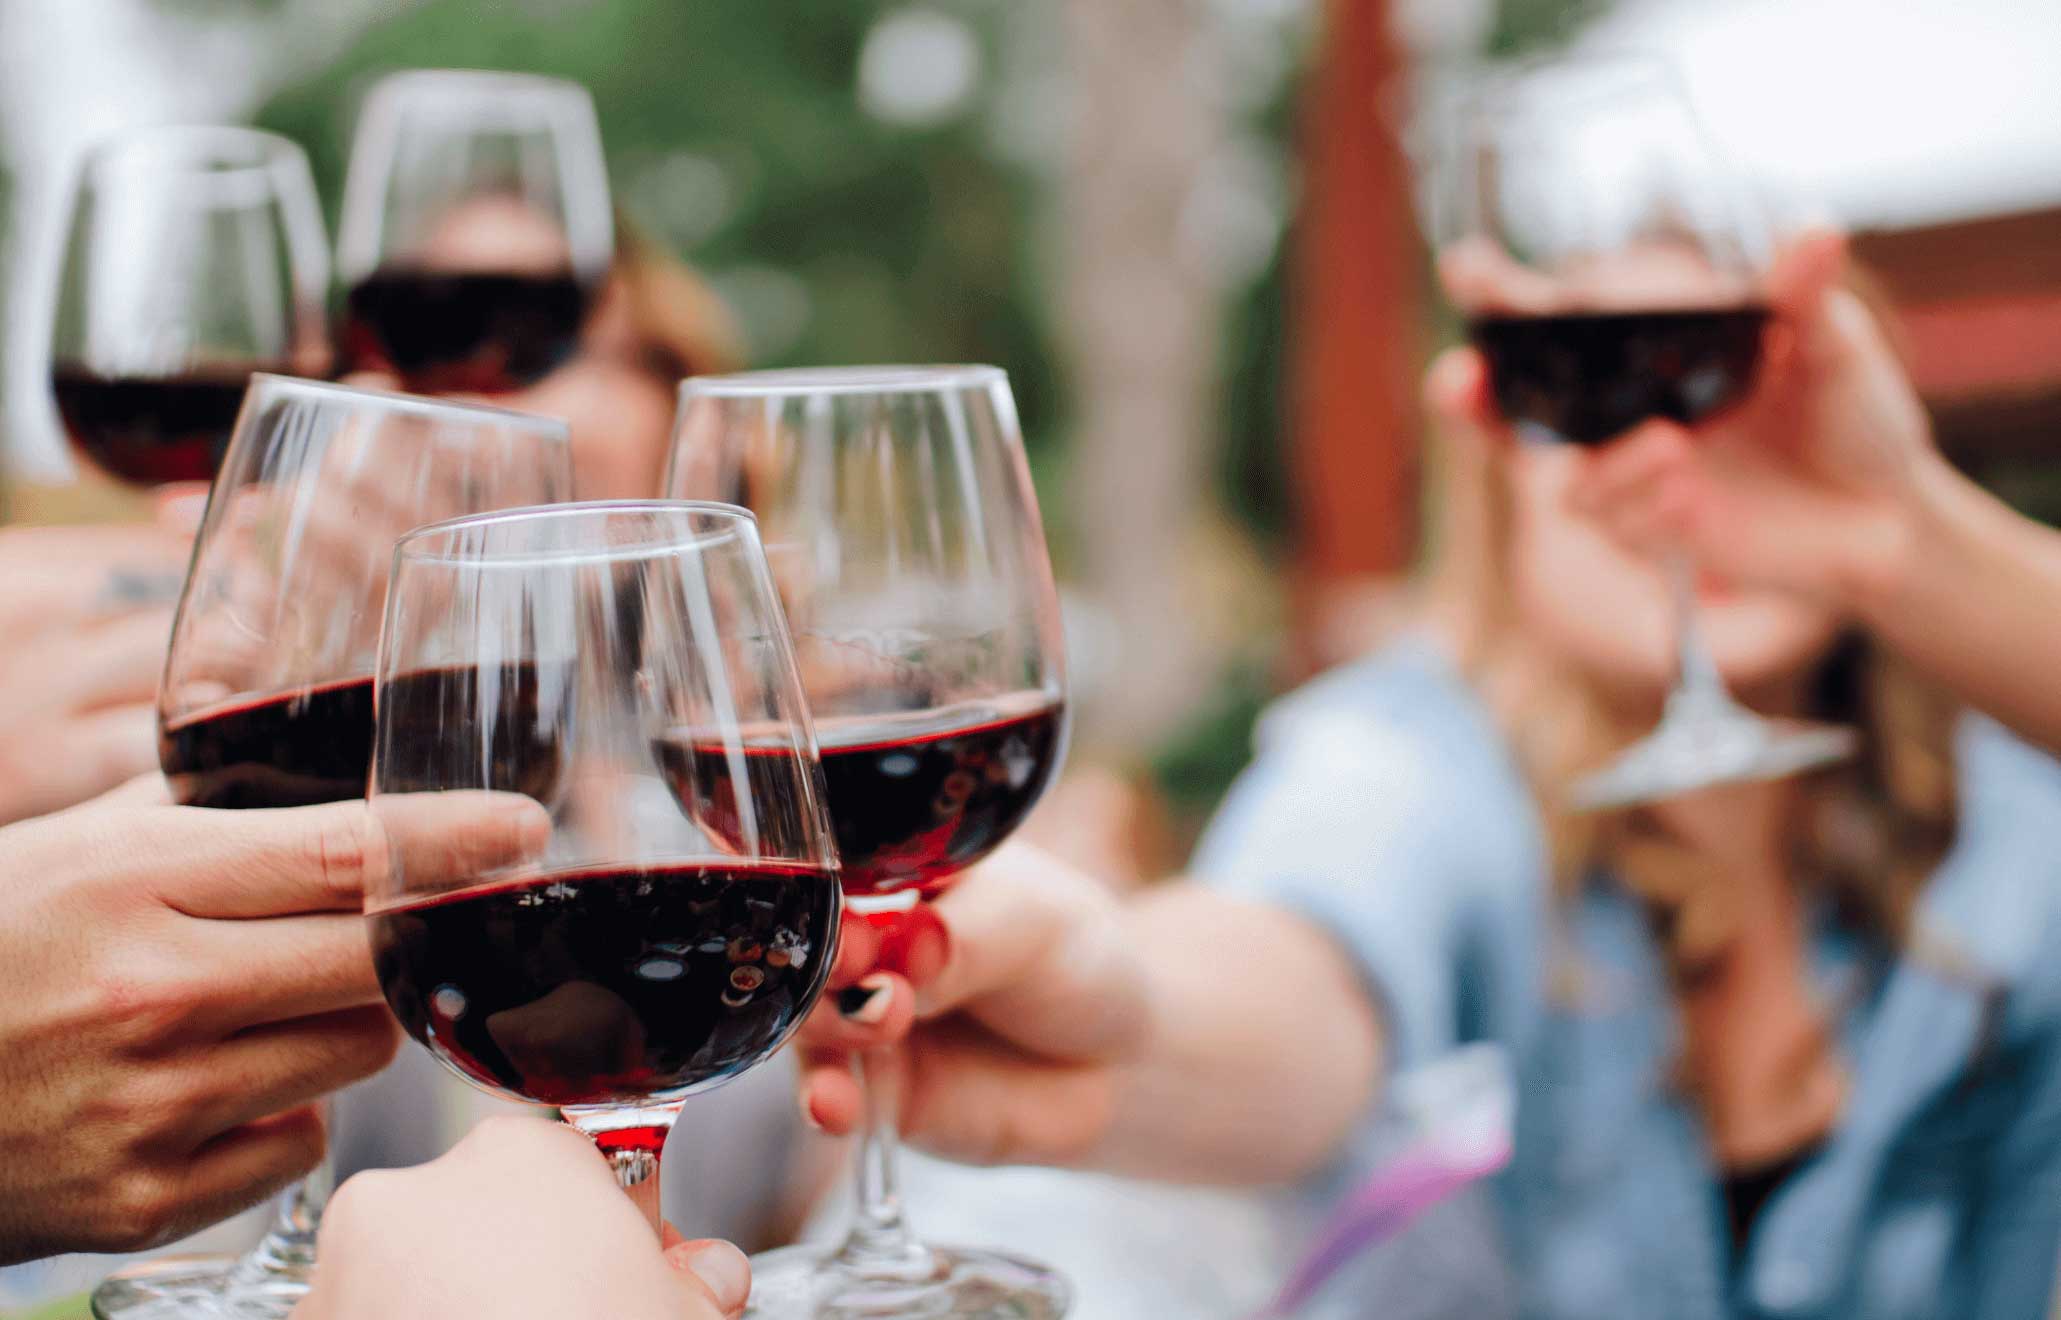 Os benefícios do vinho vão muito além de uma refeição rica em sabor com amigos e família - seu consumo moderado também pode trazer mais saúde e bem-estar.